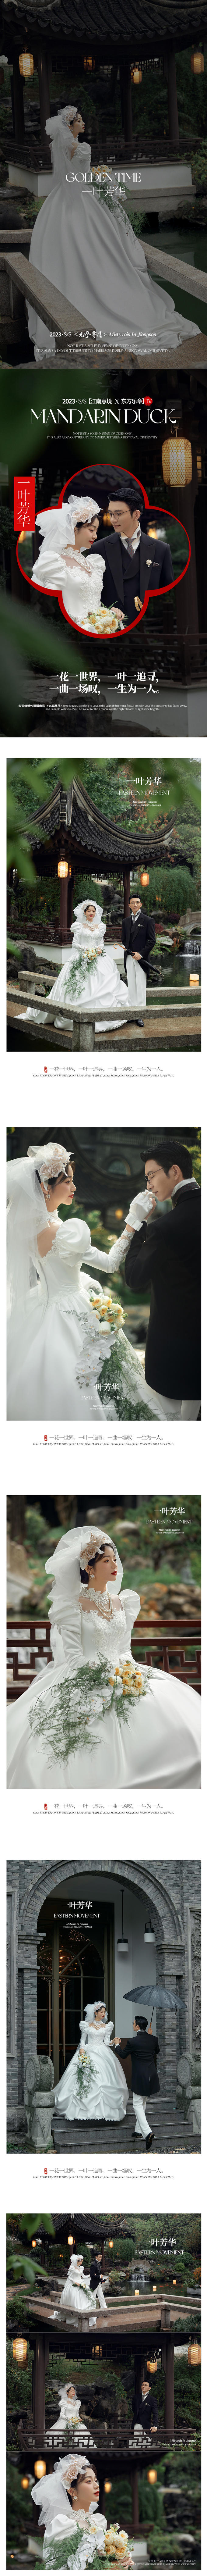 【致敬经典】复古新中式婚纱照丨全网风格任选